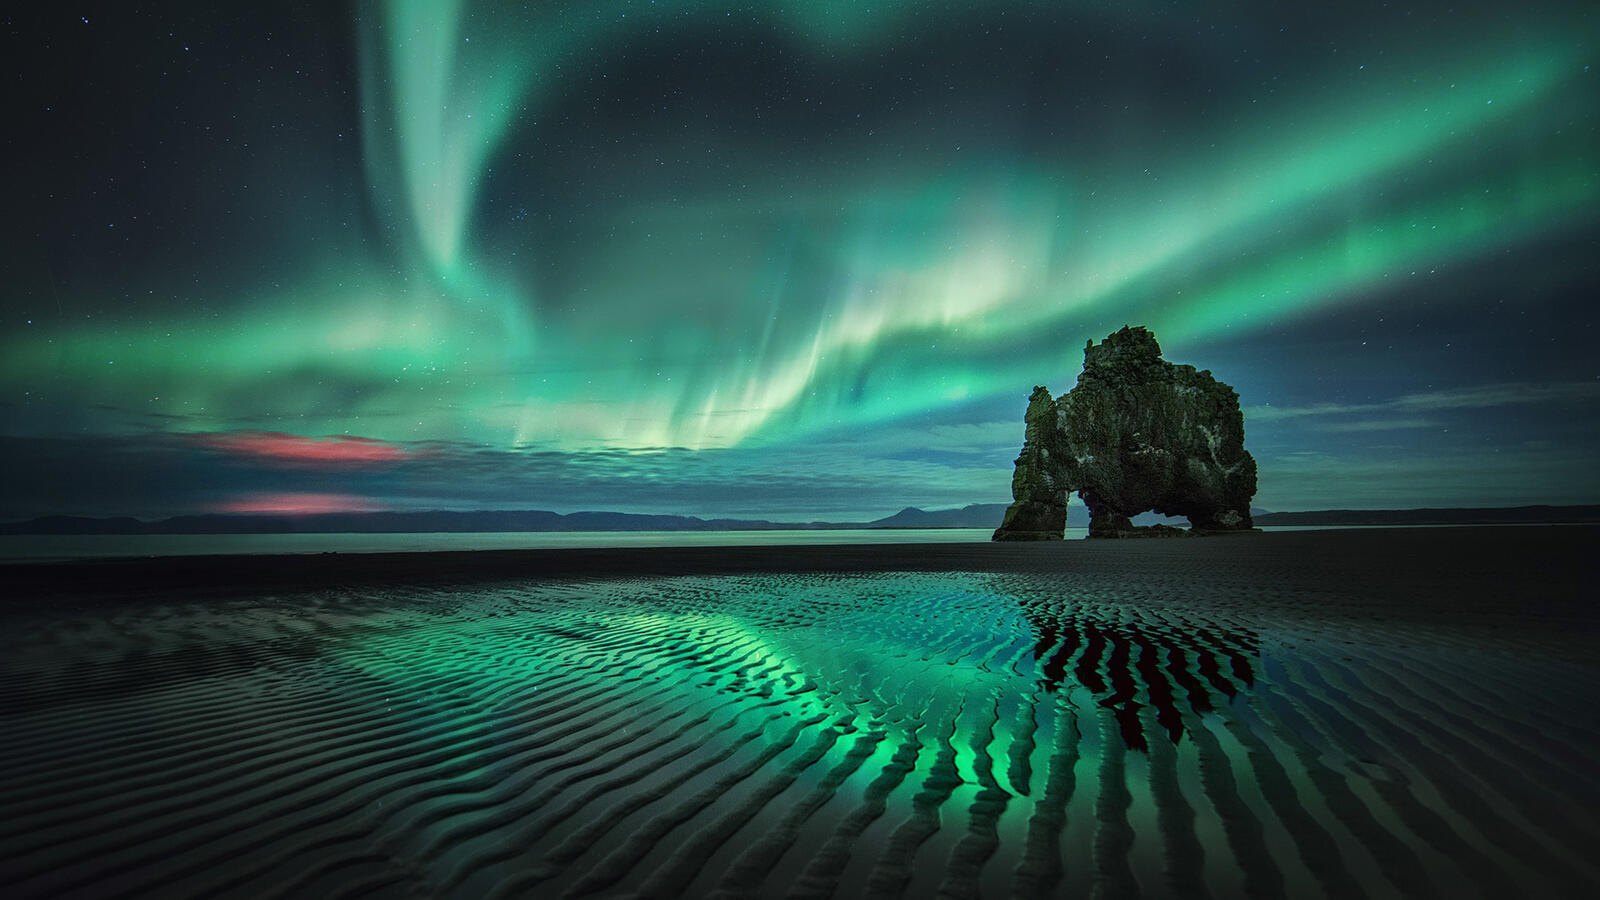 Бесплатное фото Очень красивое северное сияние с отражением в воде